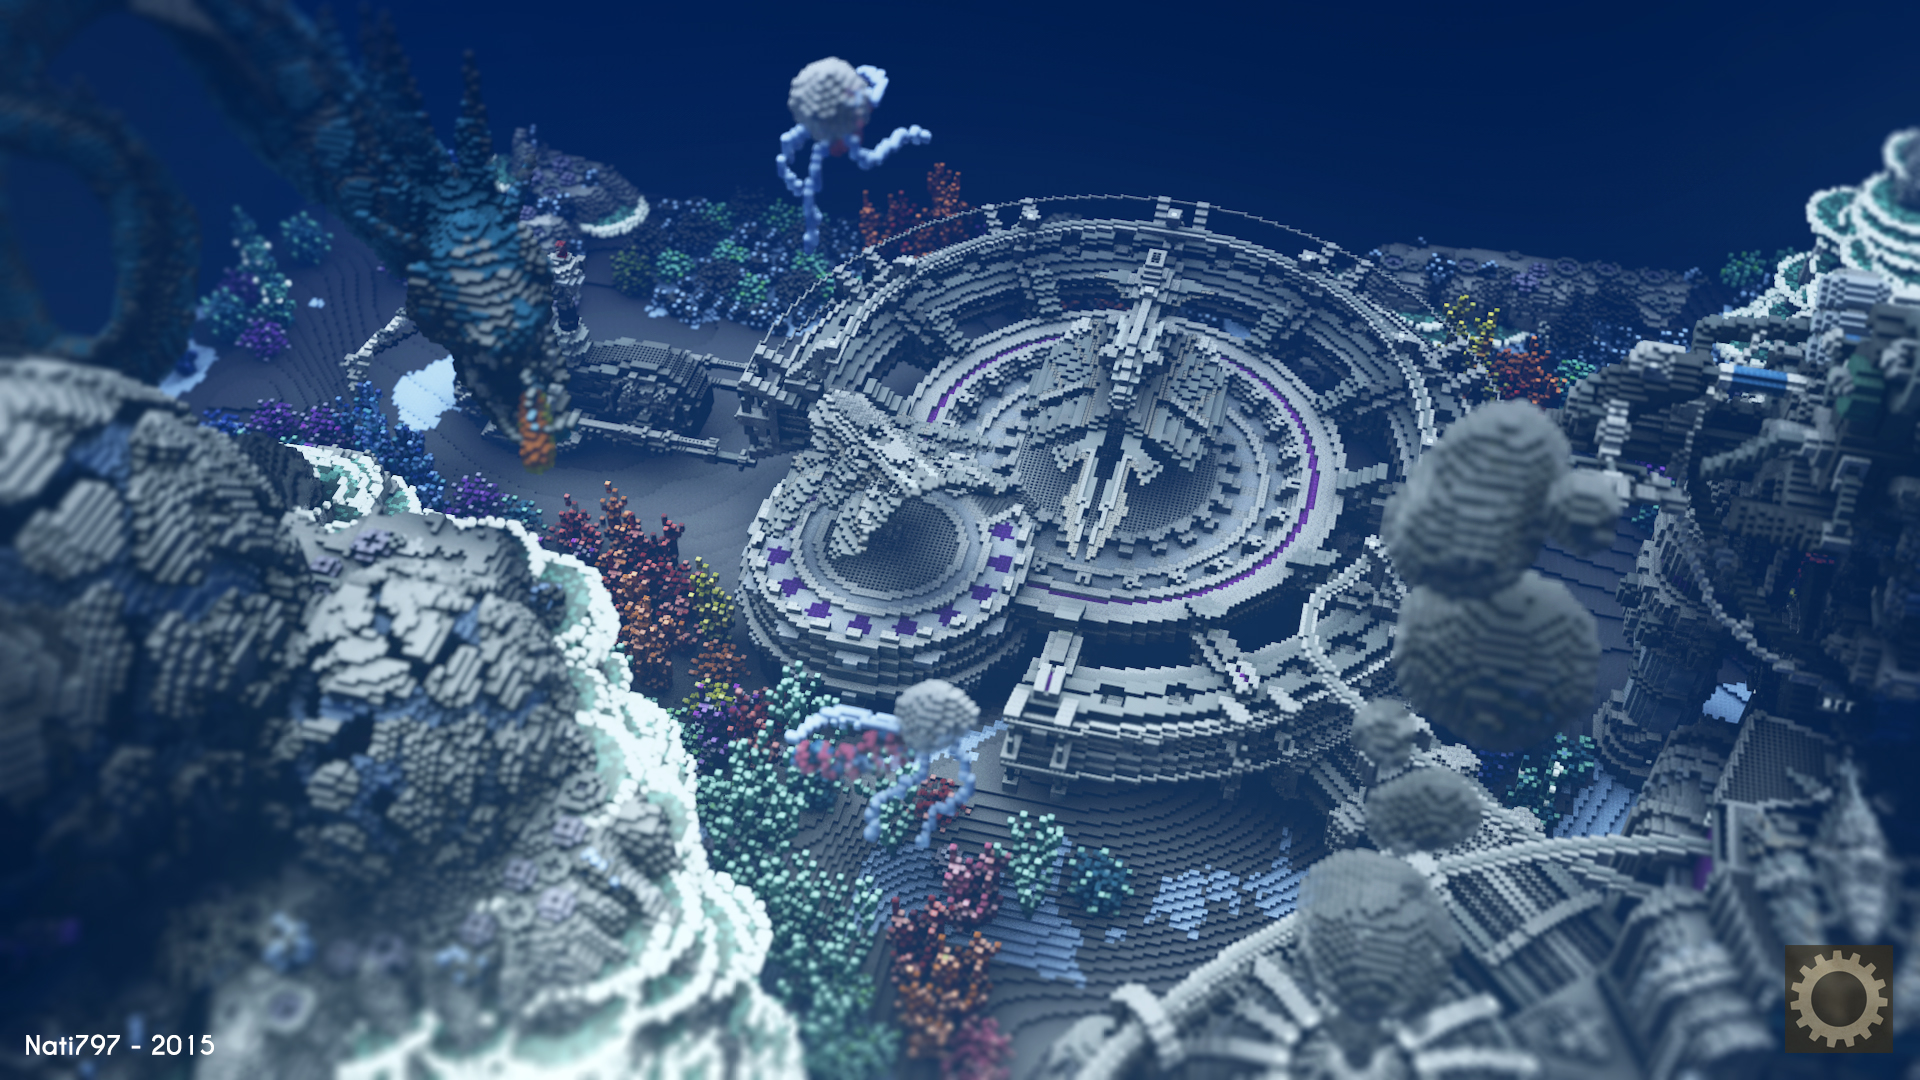 Deep Sea Wonderland Built In Minecraft Looks Incredible